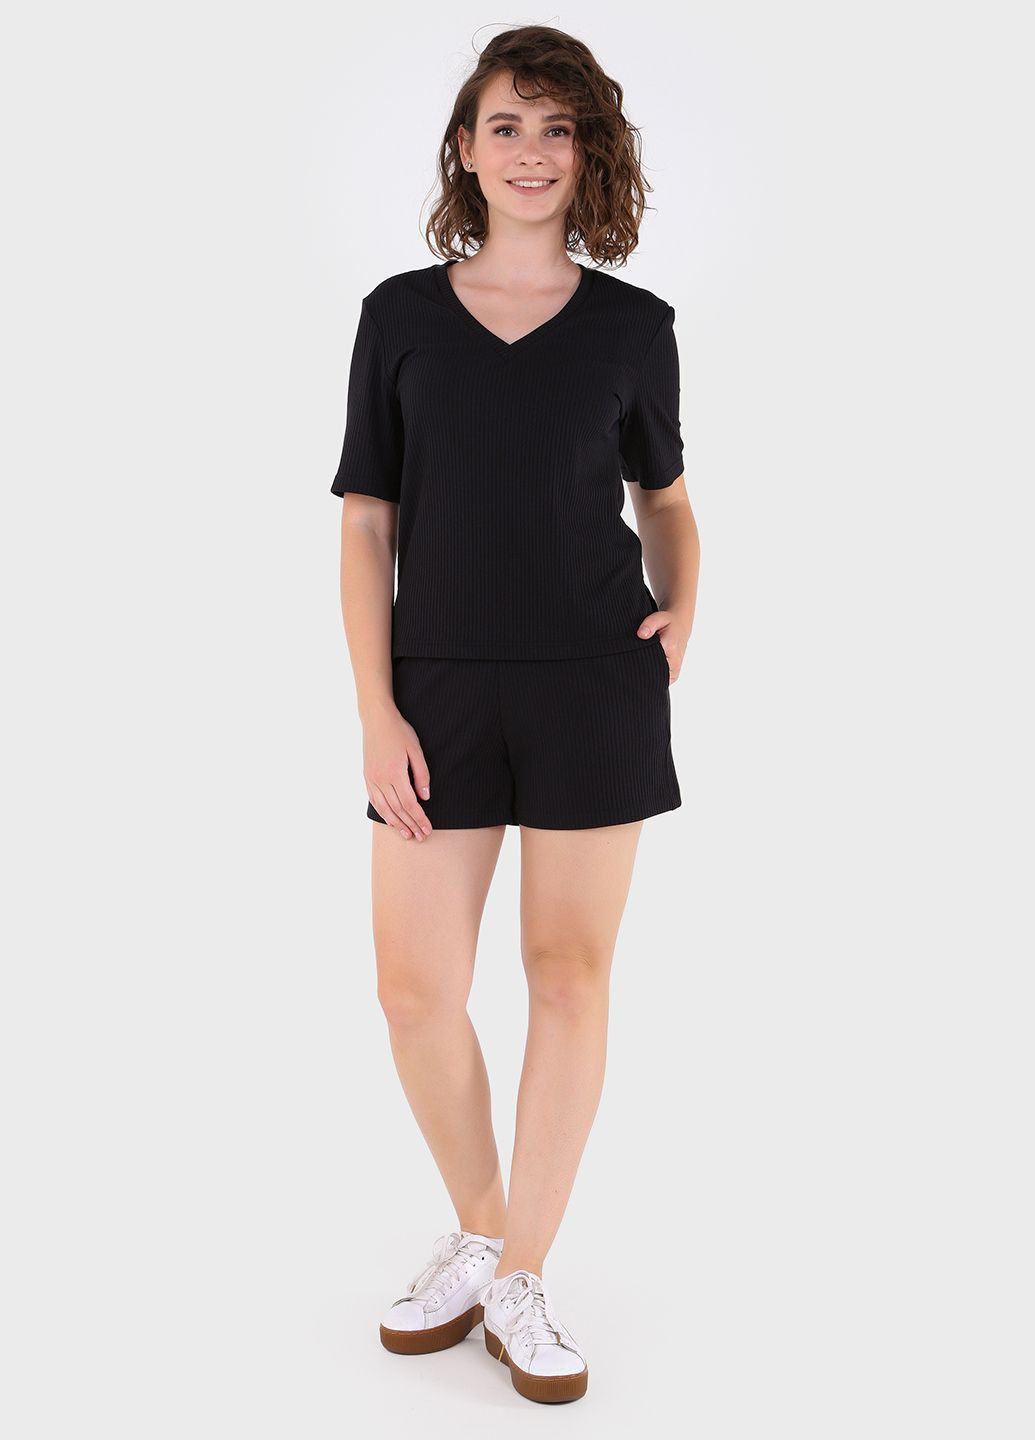 Купить Легкая футболка женская в рубчик Merlini Корунья 800000021 - Черный, 42-44 в интернет-магазине